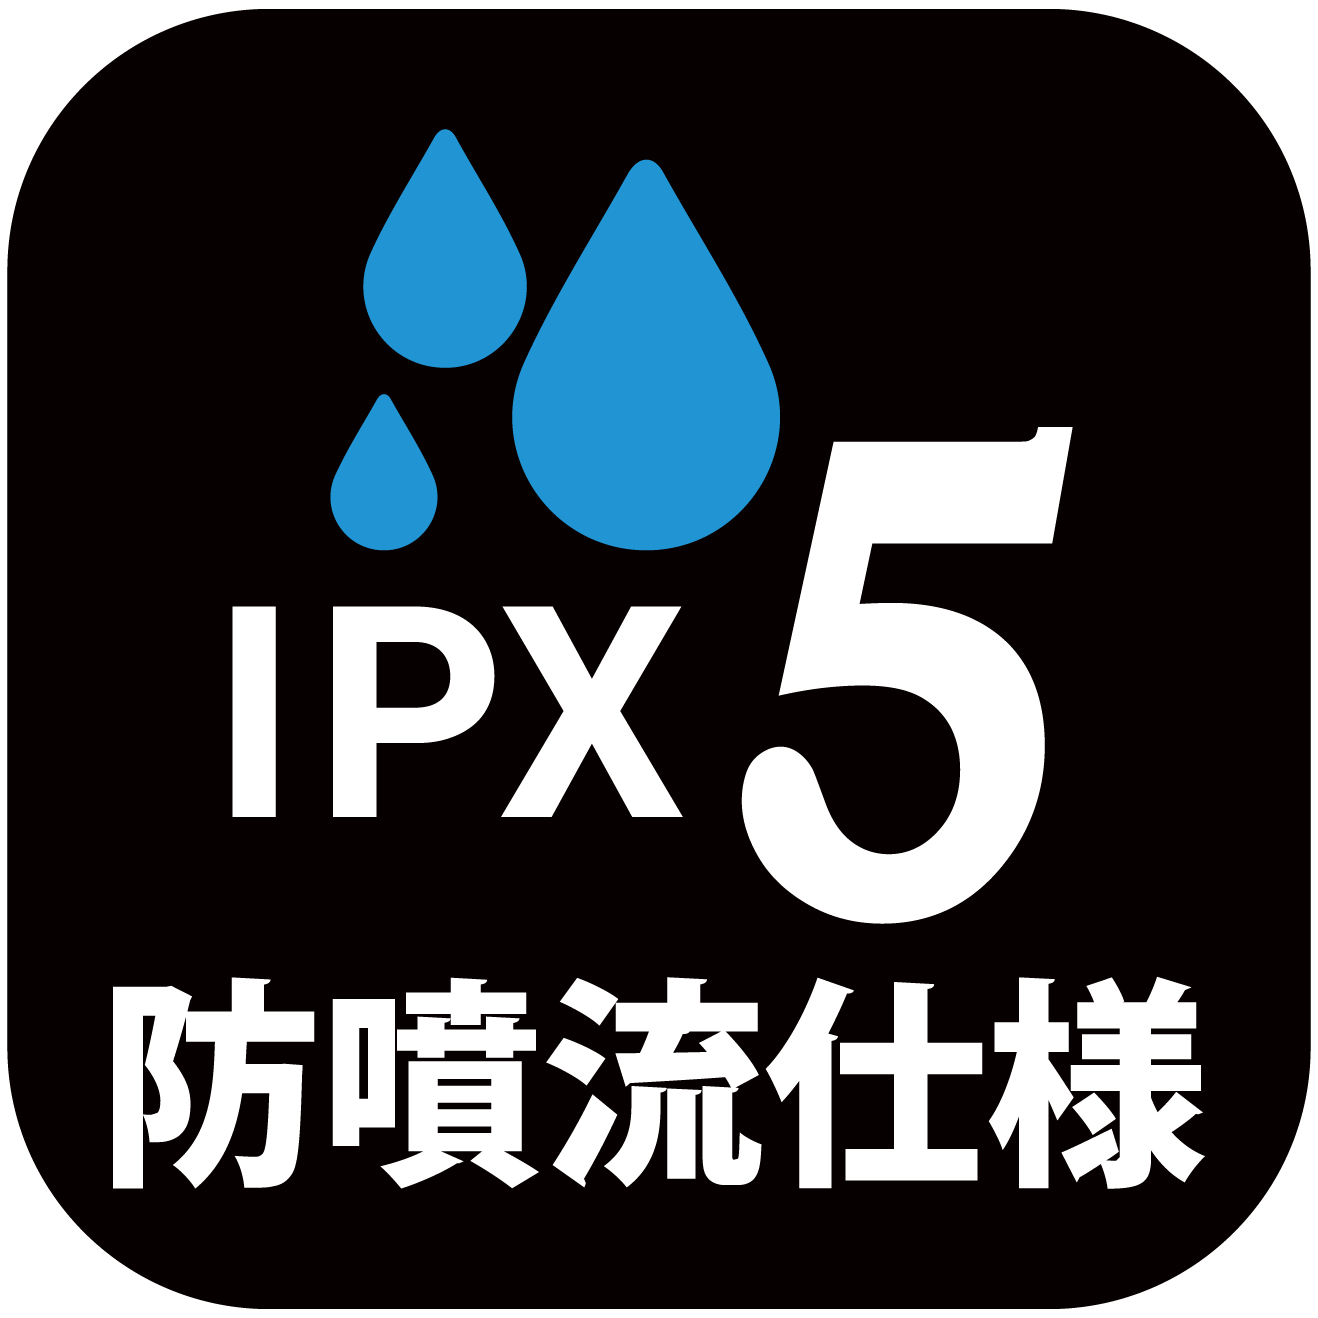 IPX5 防墳流仕様